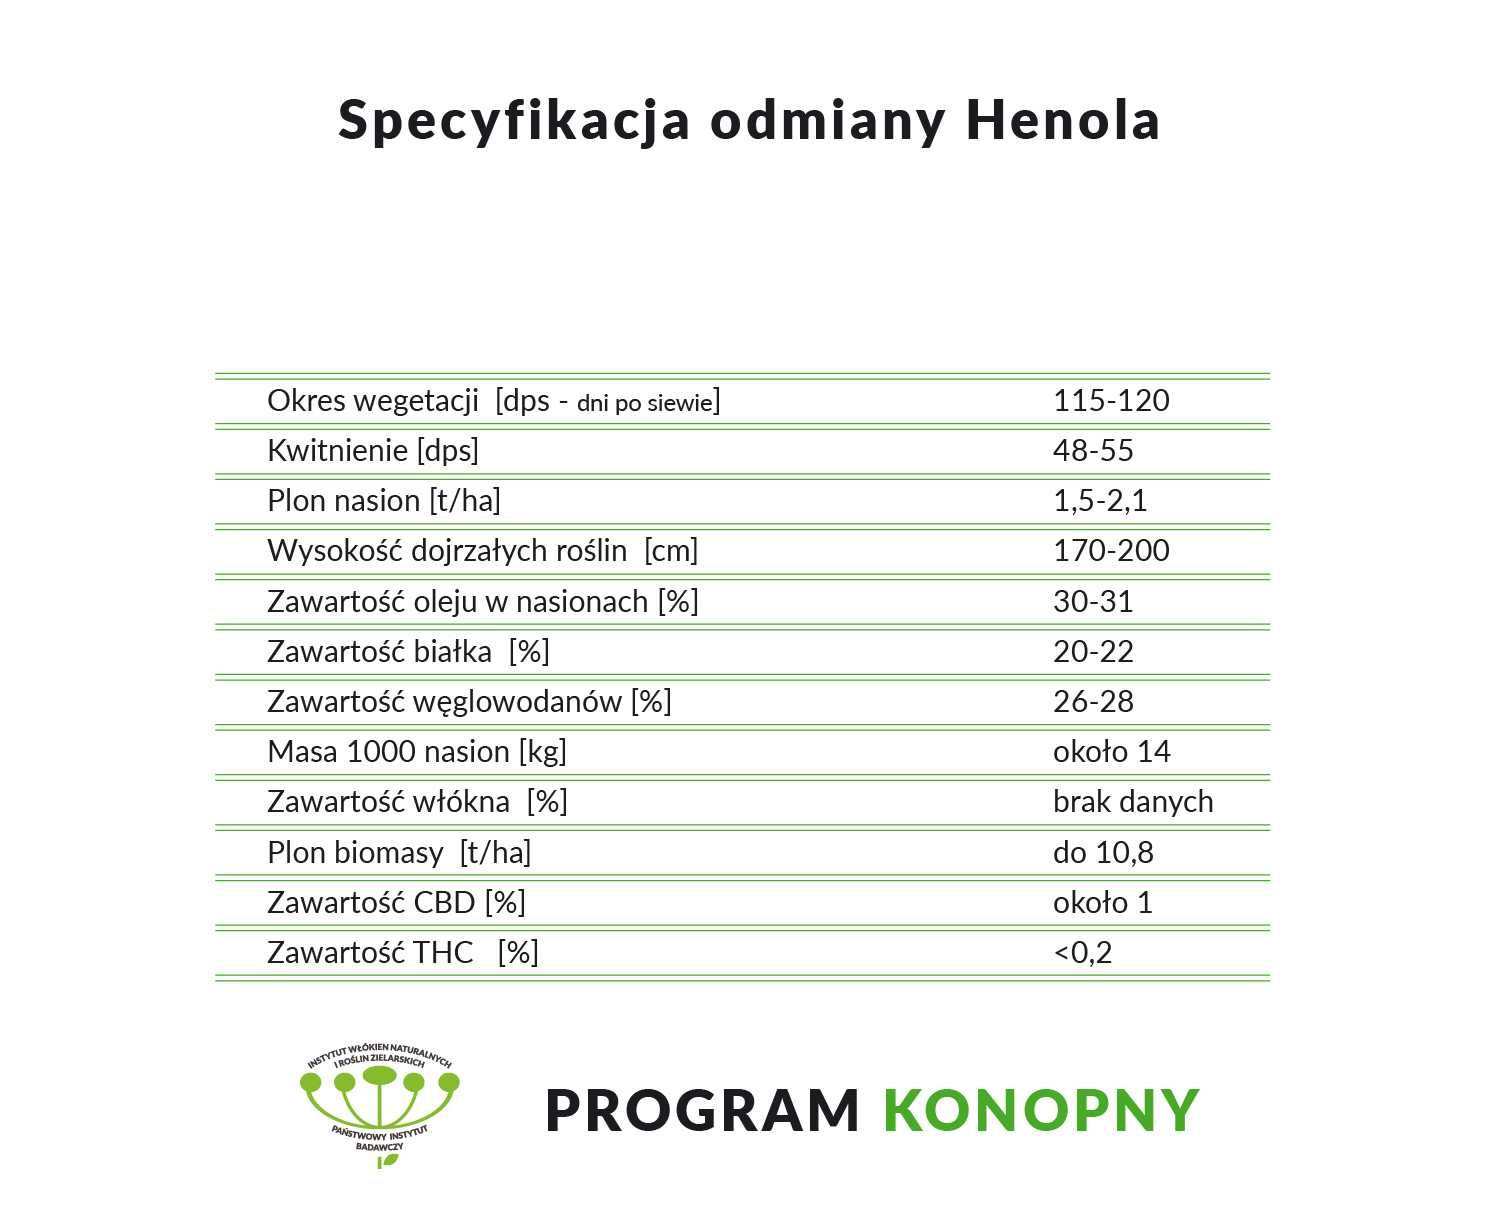 Certyfikowane nasiona polskich konopi odmiany Henola